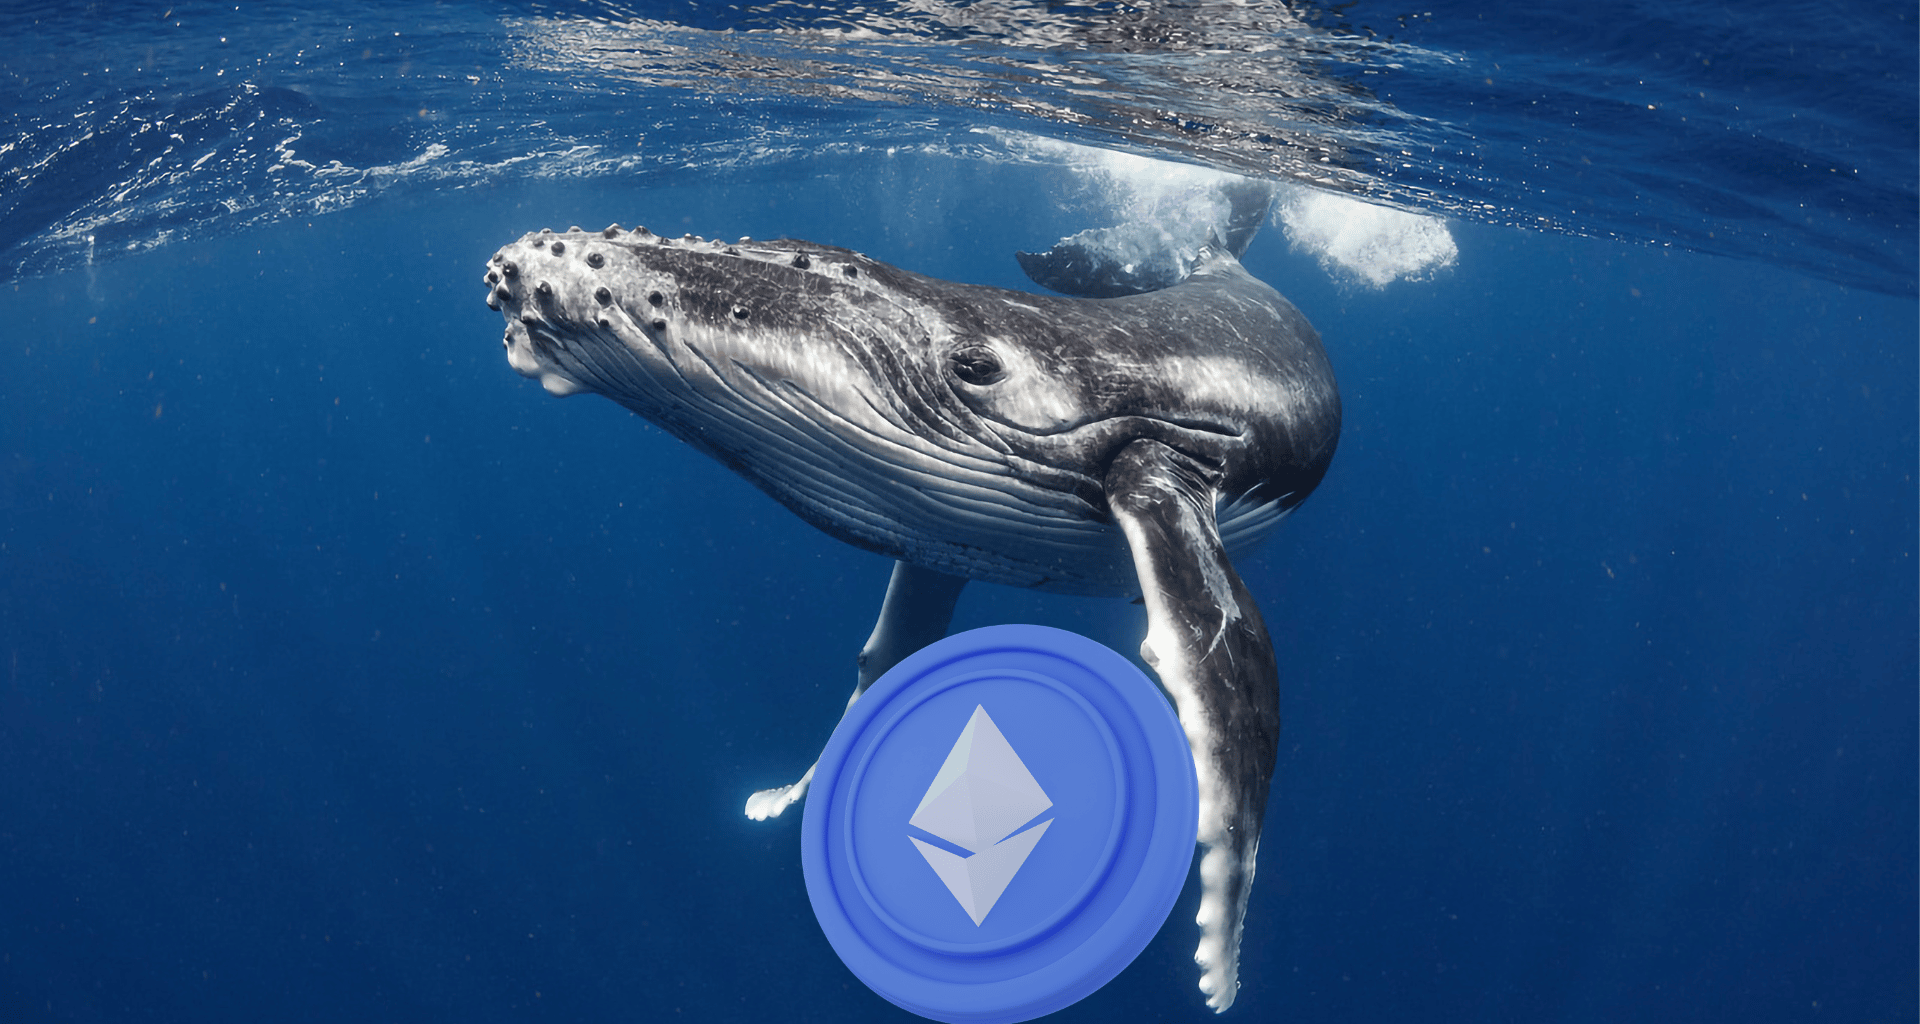 crypto whale 145 000 eth